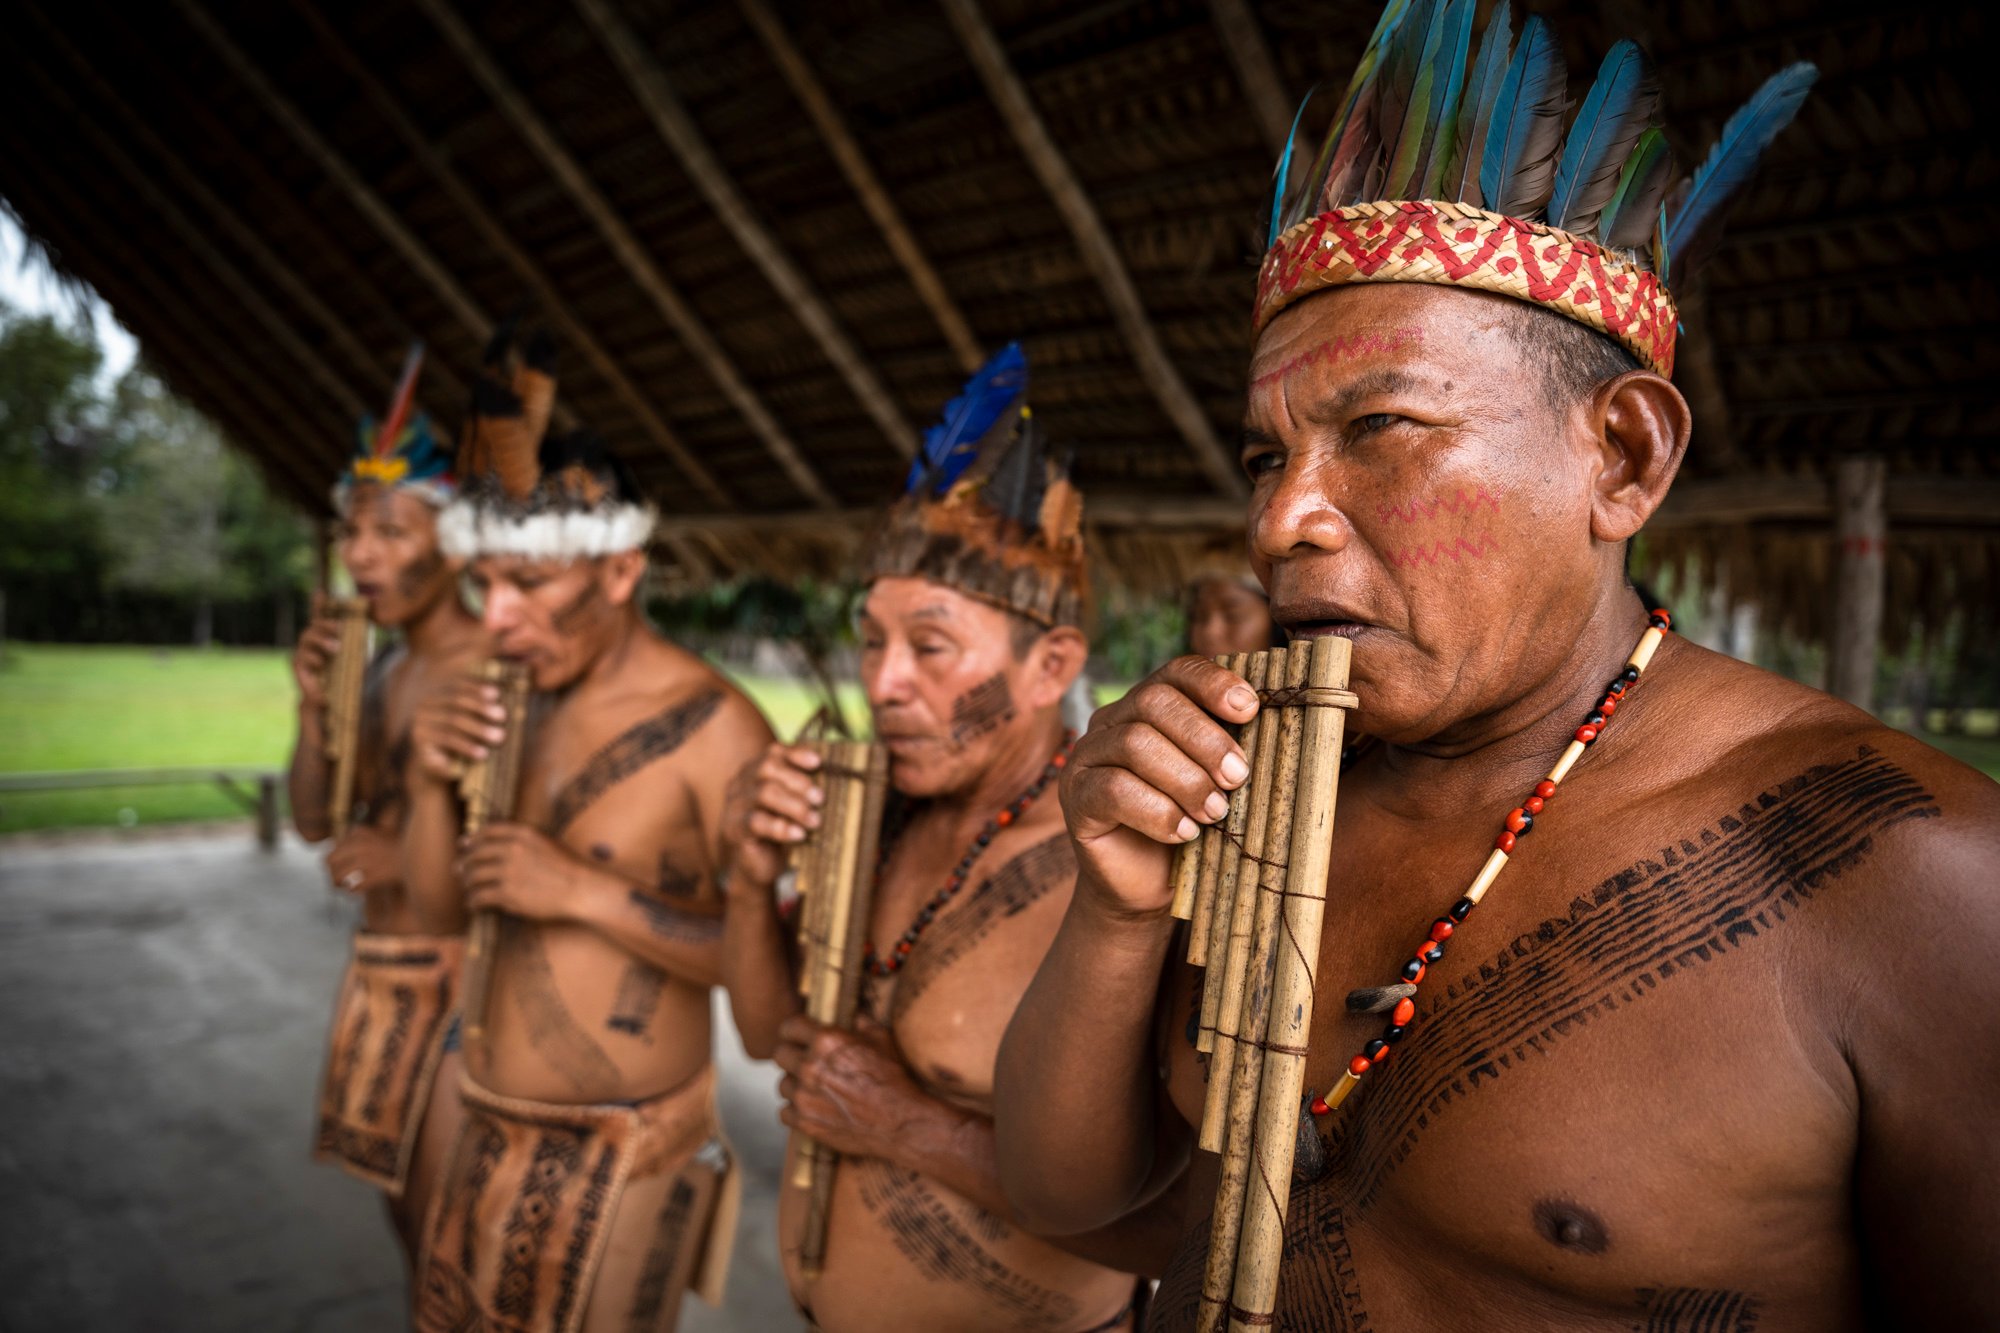 Población indígena colombiana tocando instrumentos tradicionales de nuestros pueblos originarios.